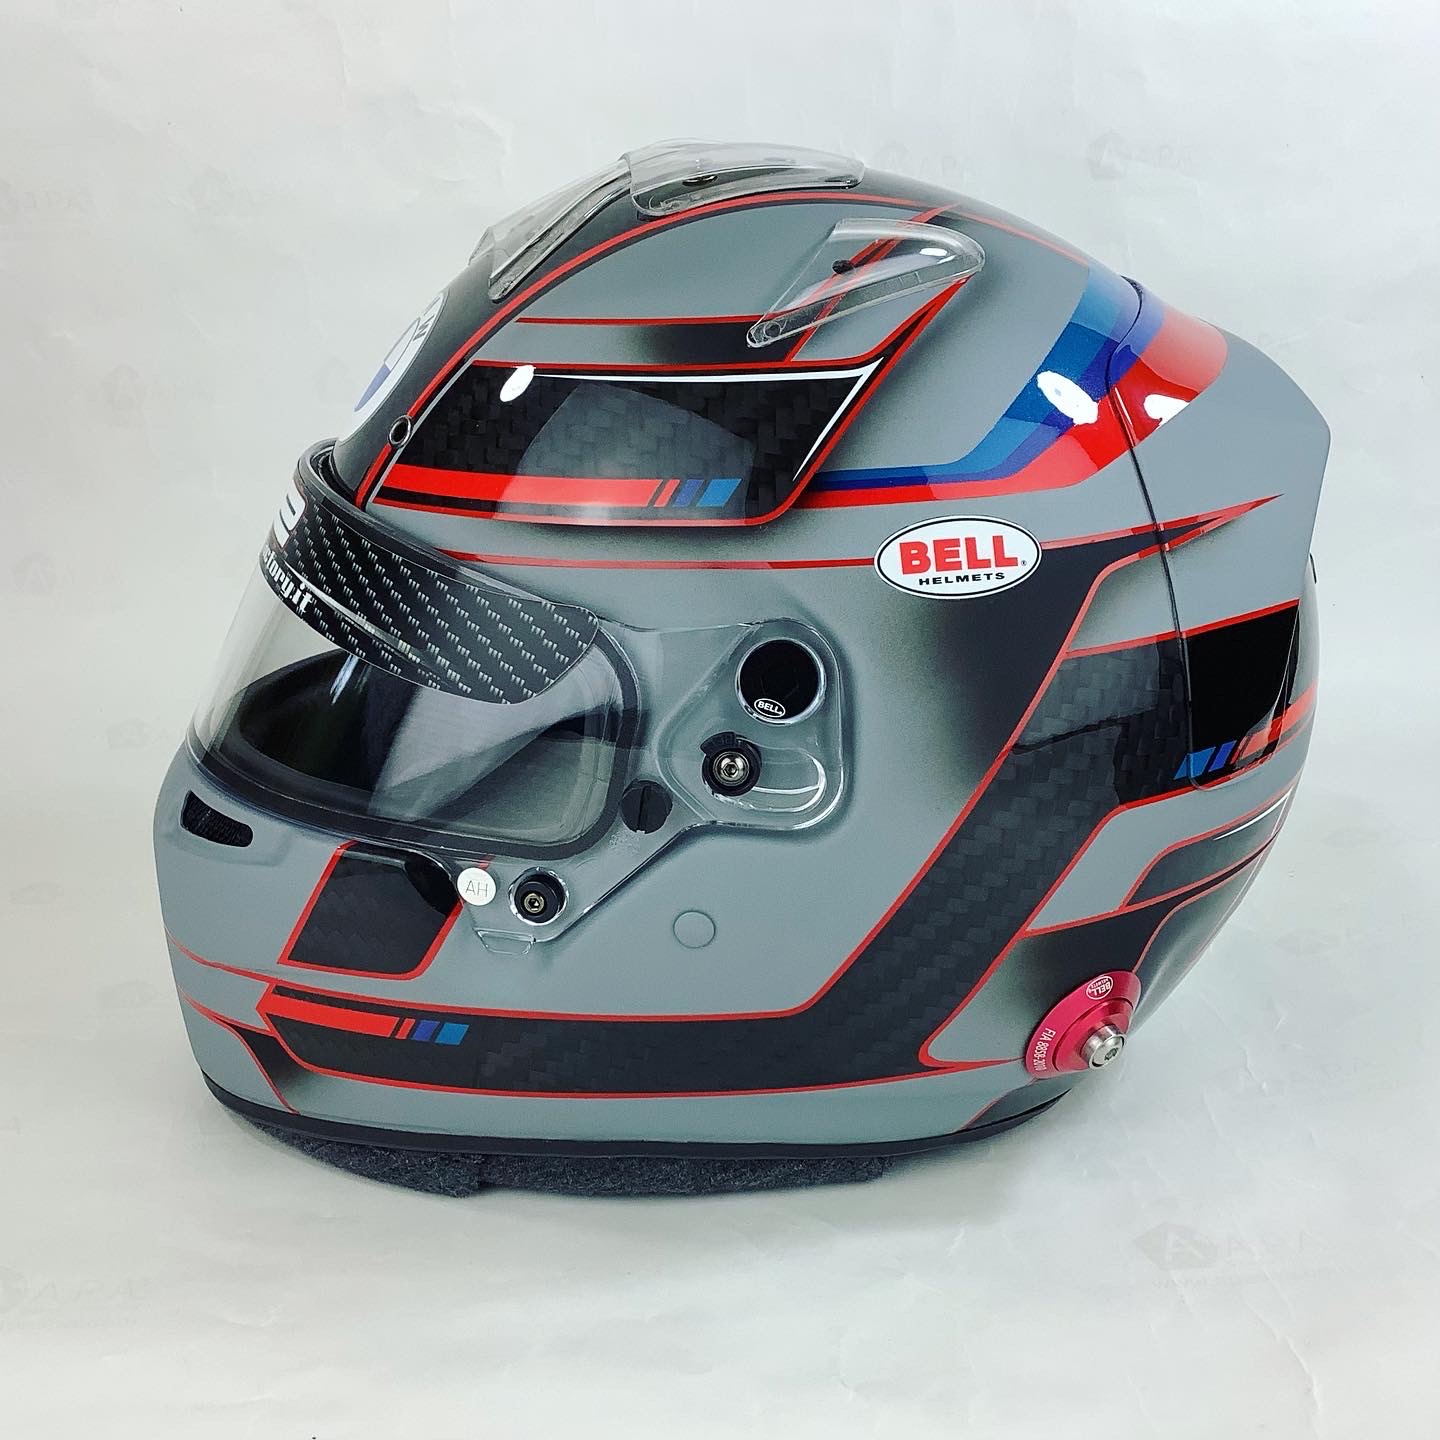 Bmw helmet design